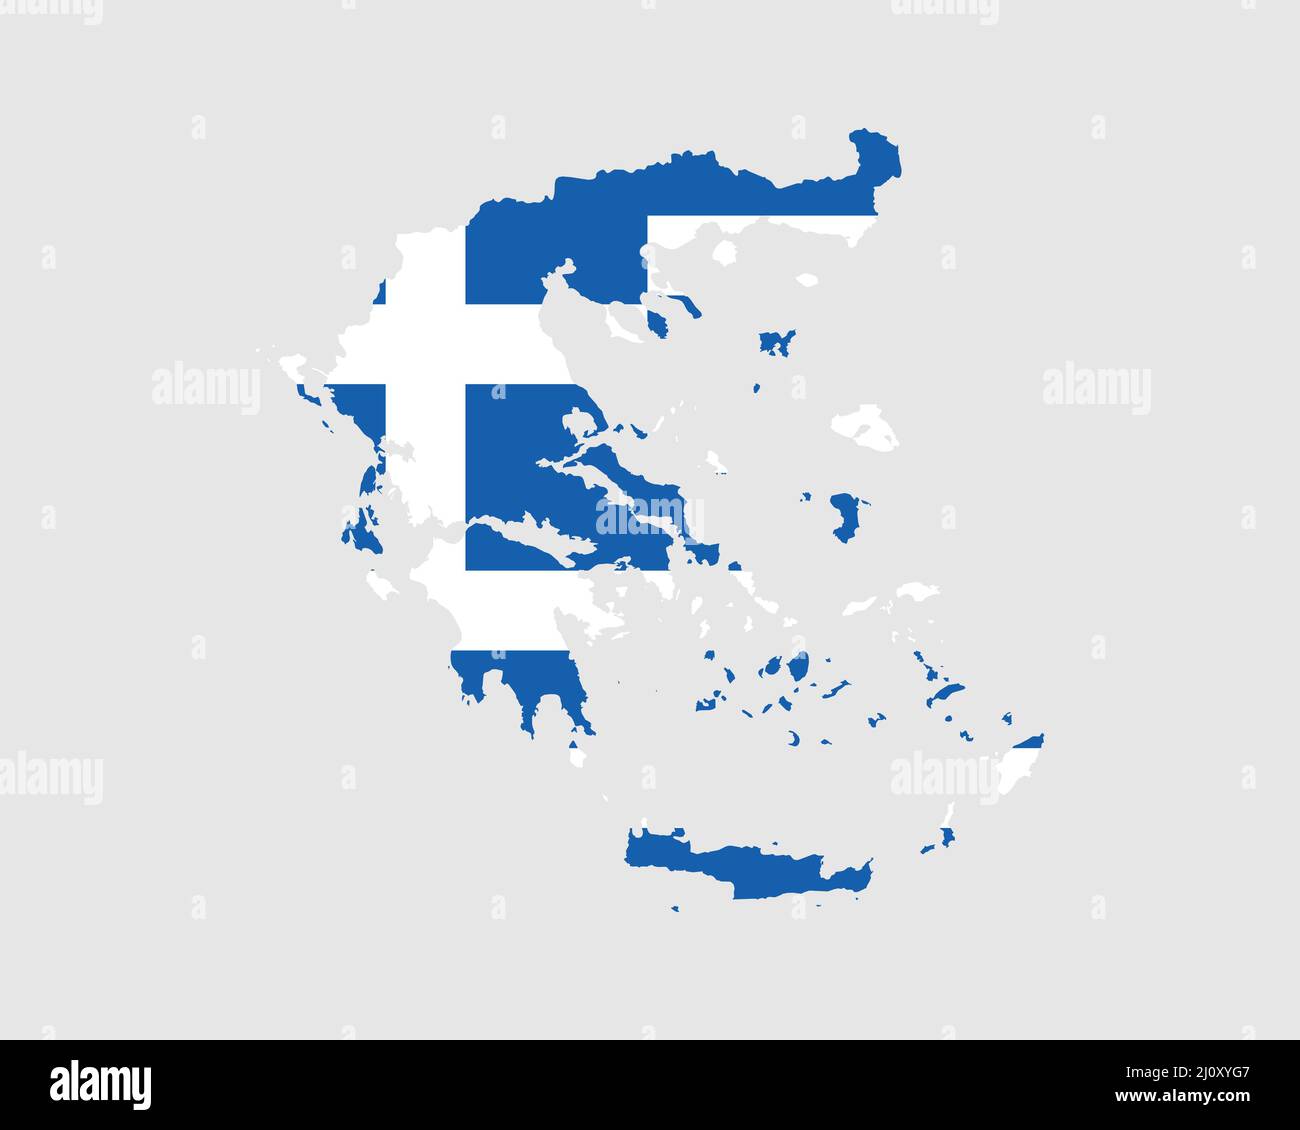 Bandiera della mappa della Grecia. Mappa di Hellas con la bandiera greca. Illustrazione vettoriale. Illustrazione Vettoriale